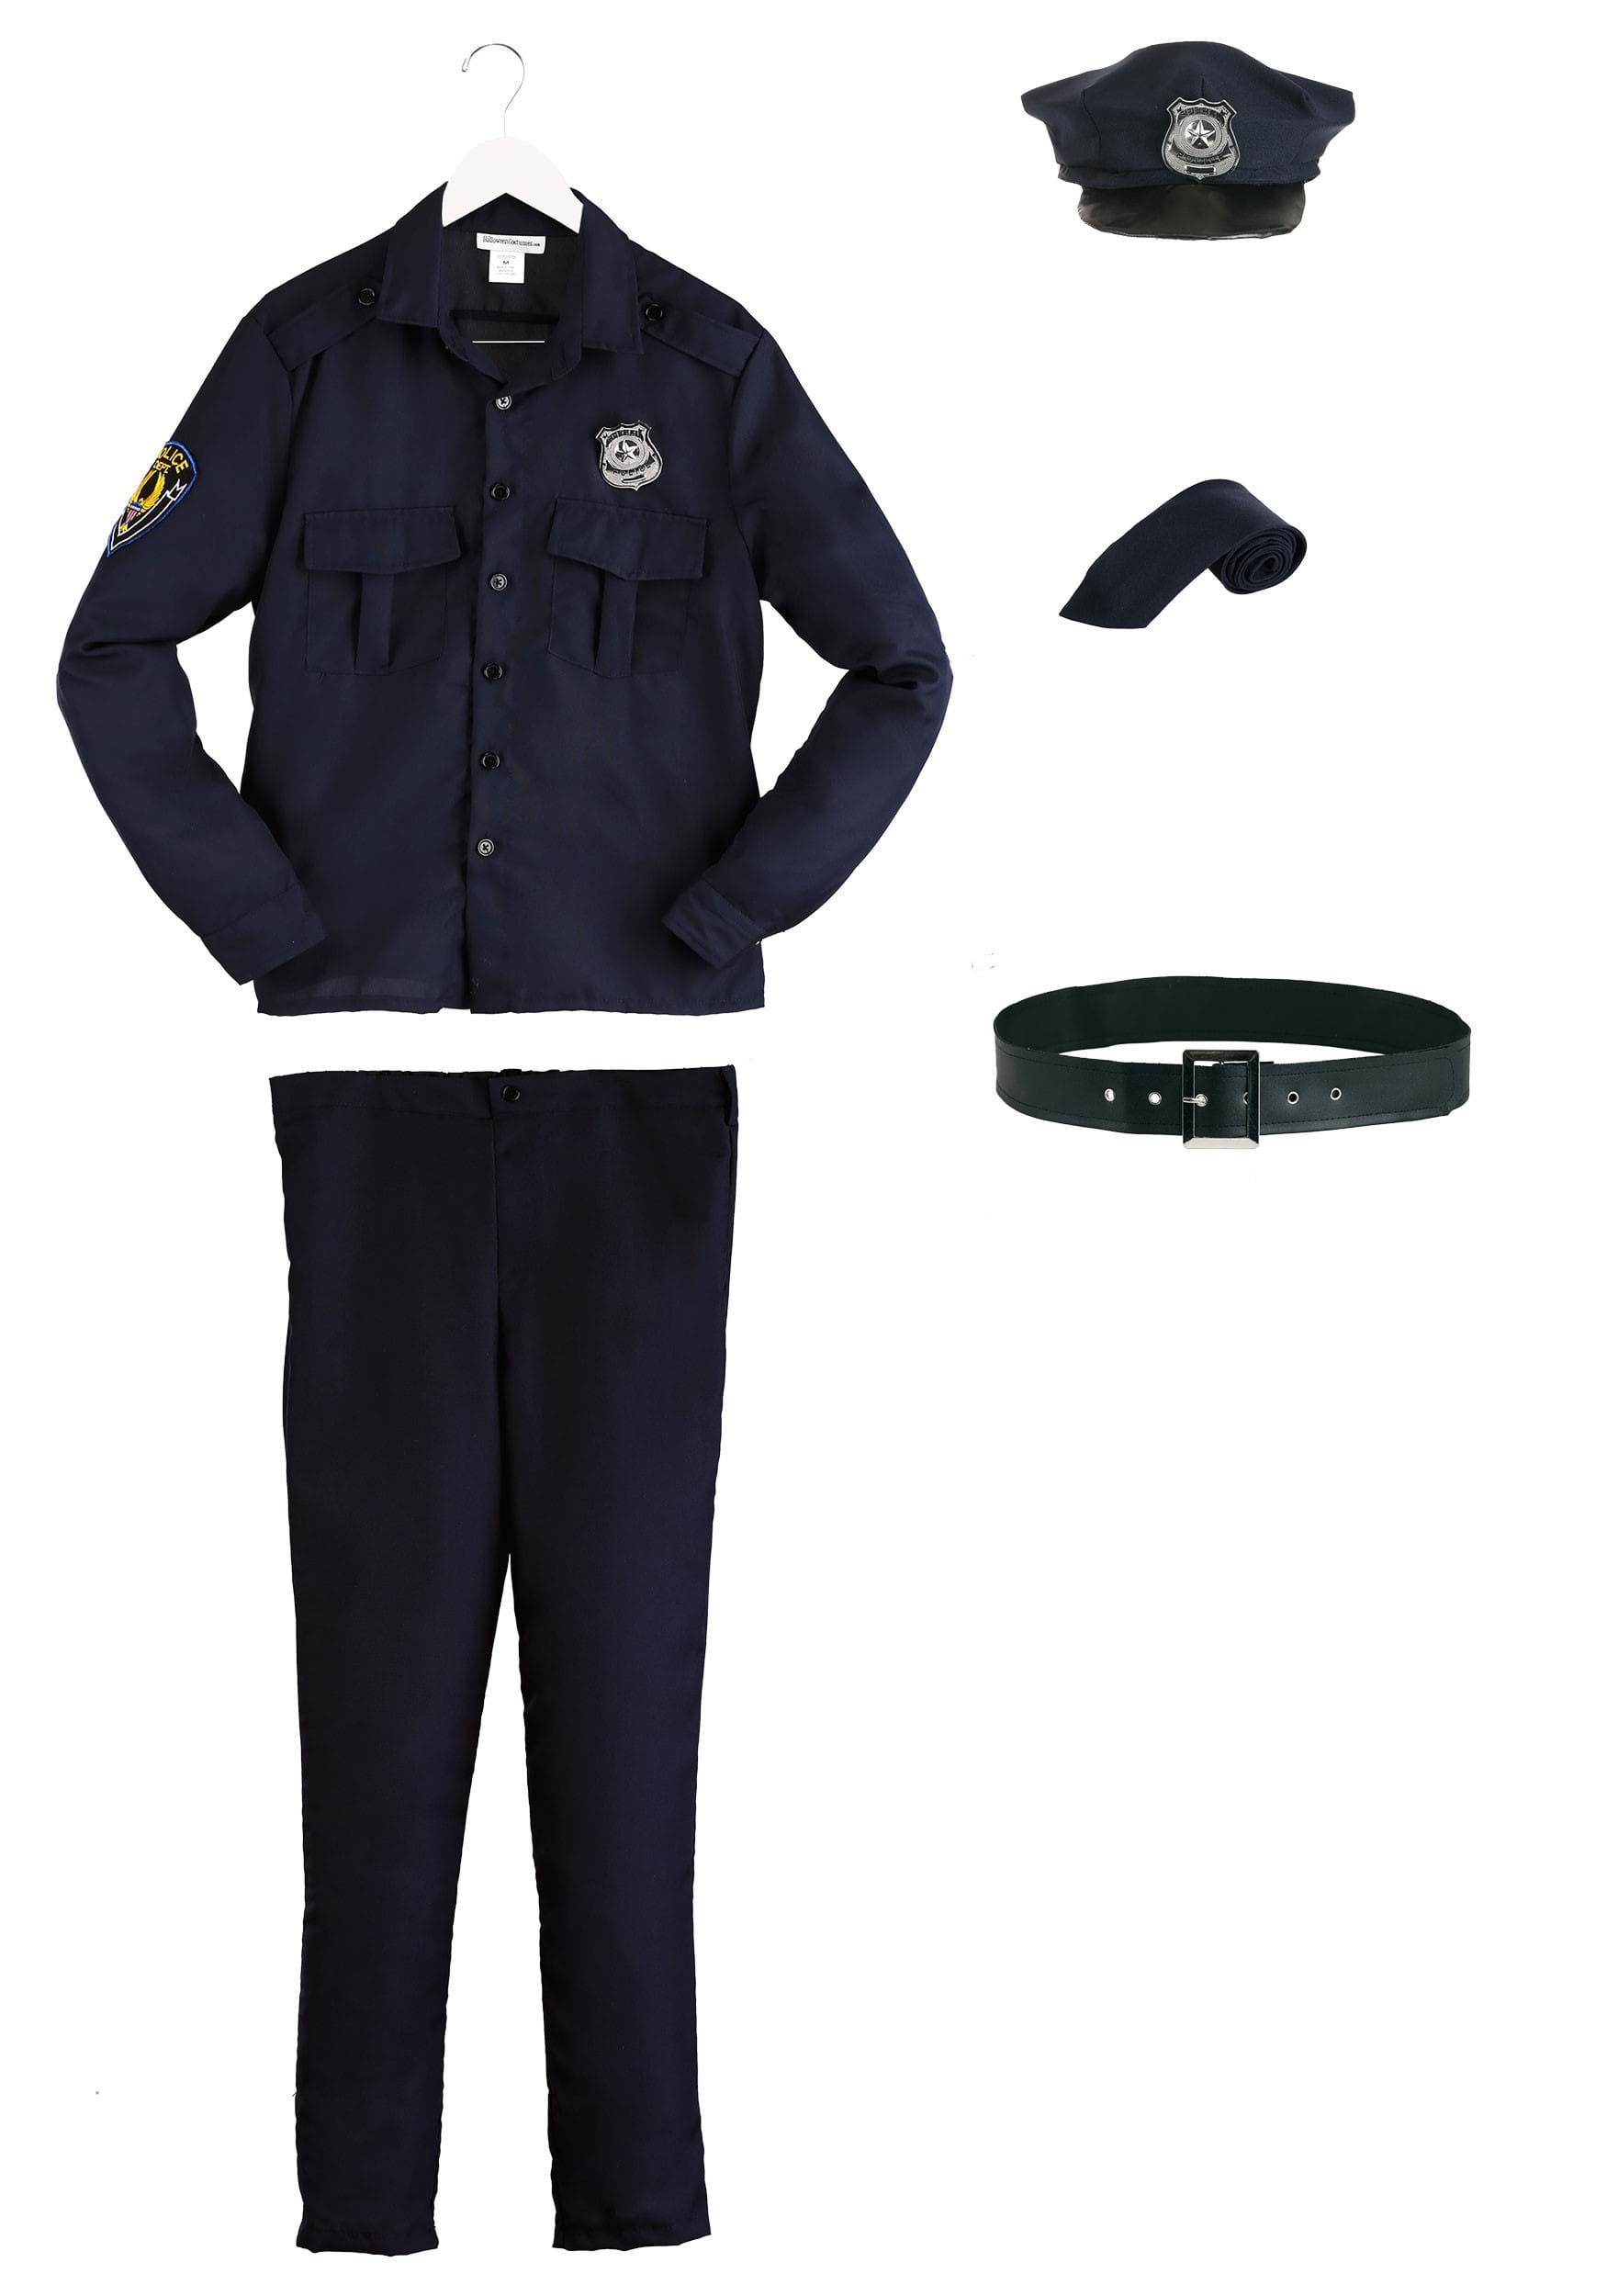 Men's Cop Costume  Adult Halloween Police Costume